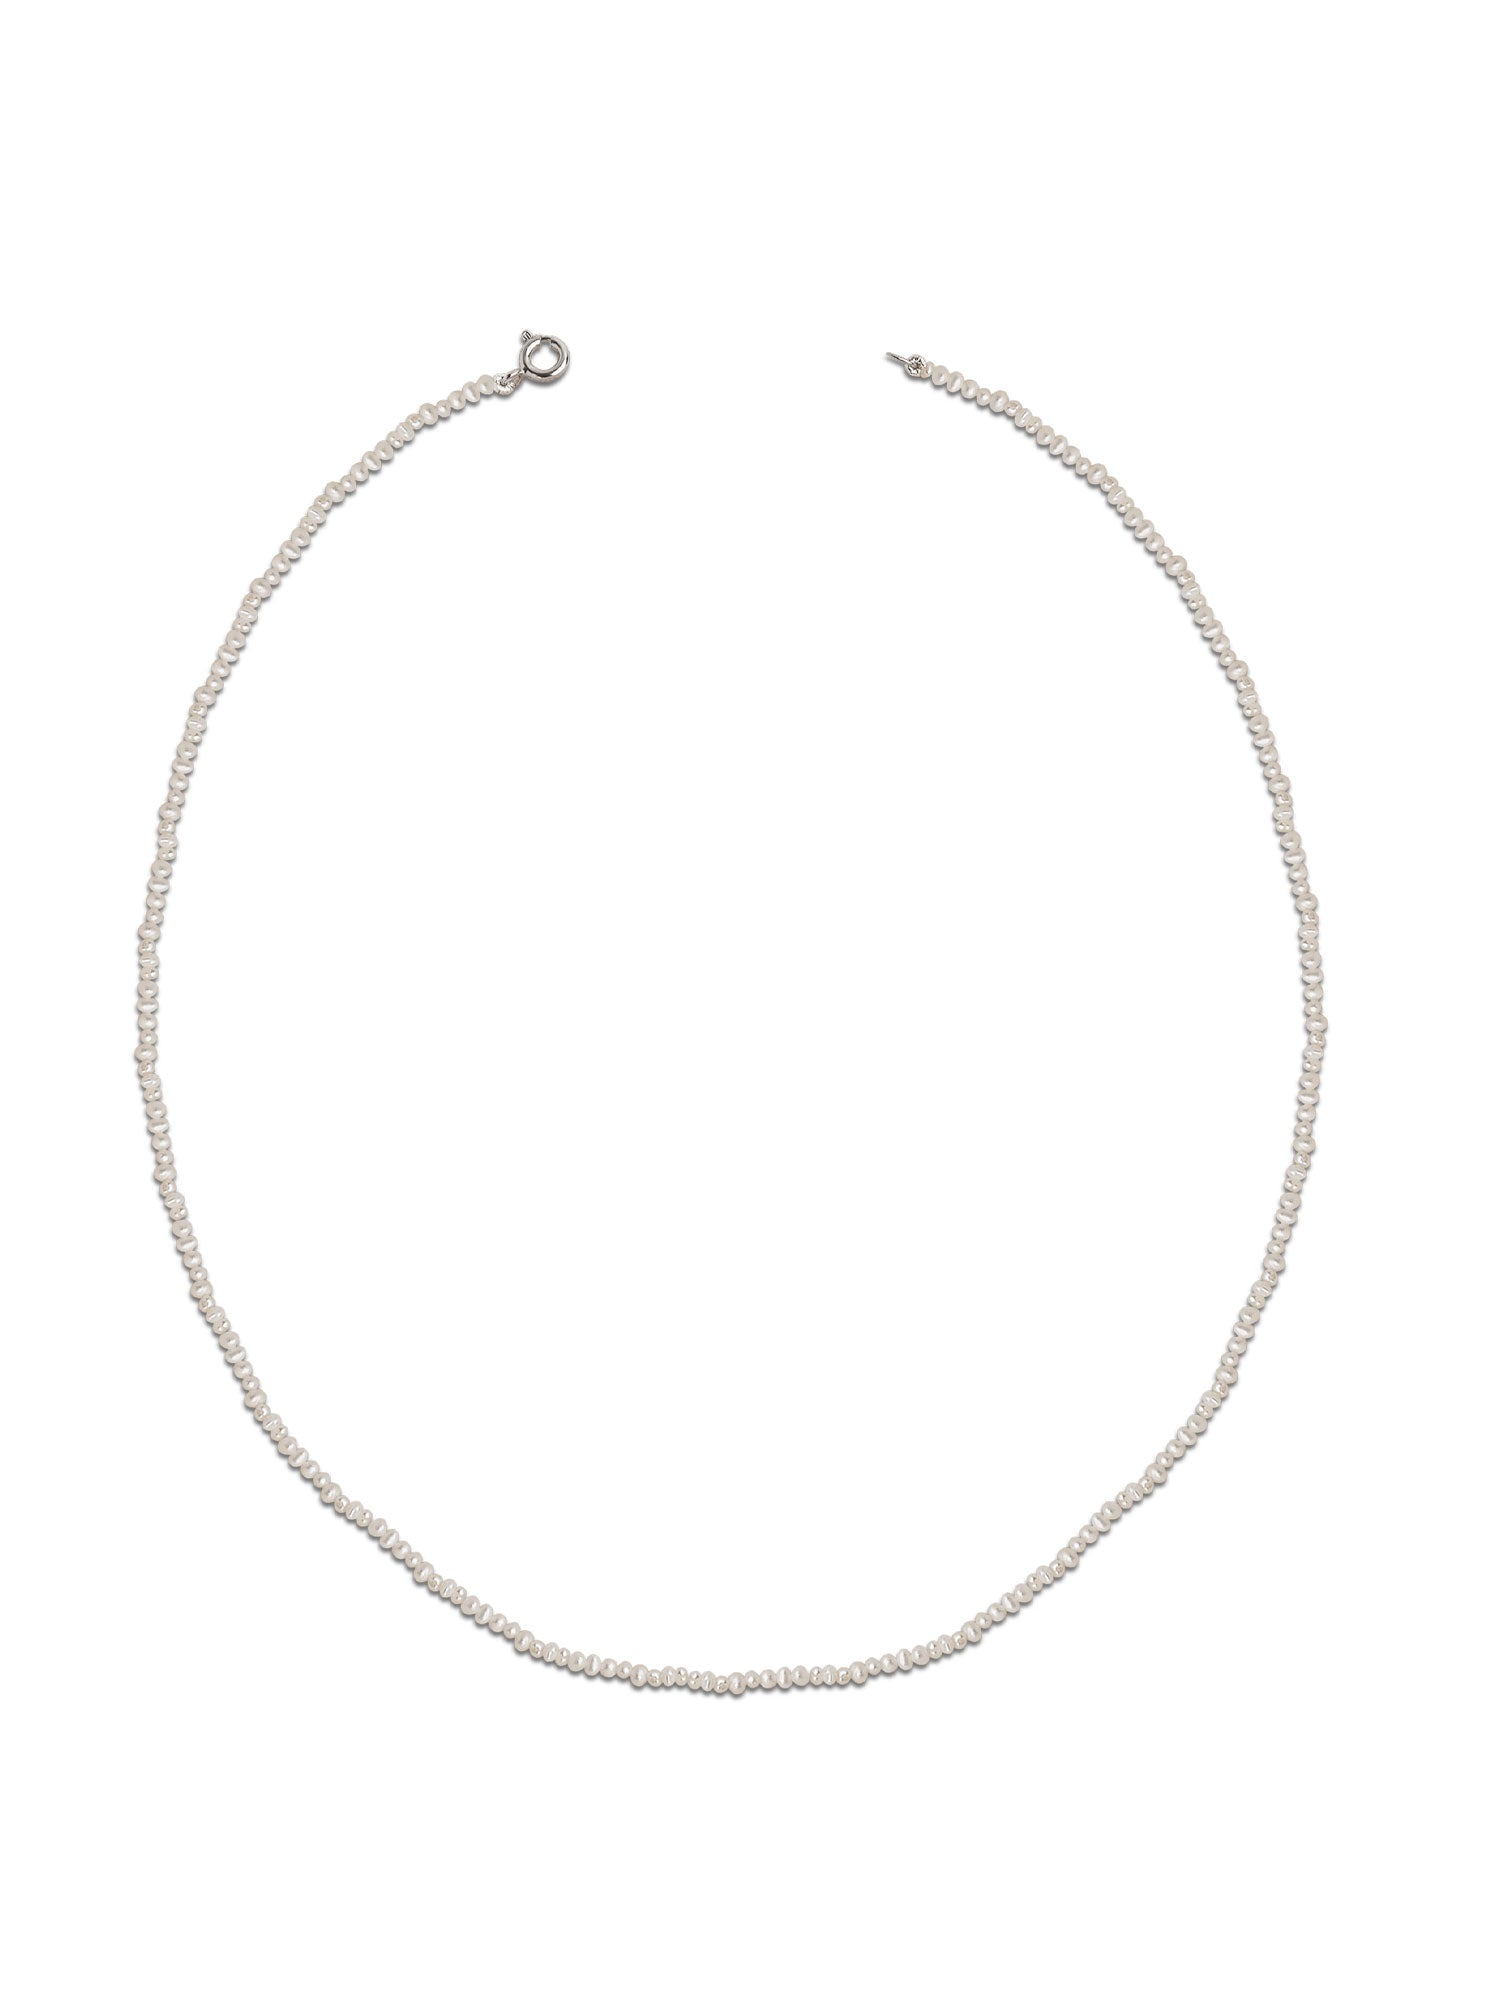 Collar de Perlas Mini Cultivadas de Agua Dulce tipo Rice, de 2 mm y 45 cm de largo Secret & You